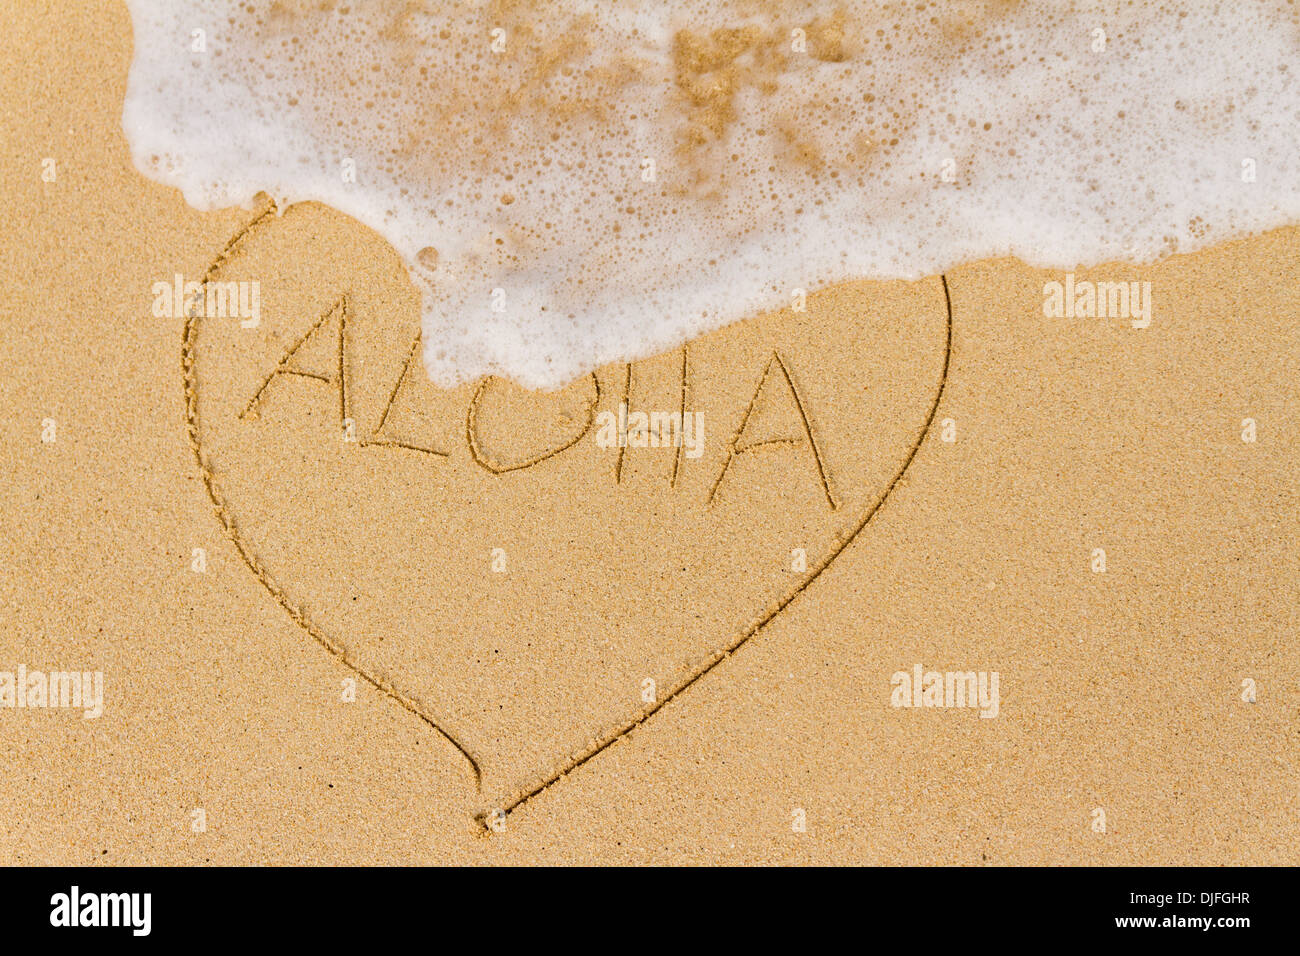 Ocean di acqua di lavaggio su un cuore disegnato nella sabbia con la parola Aloha; Honolulu Oahu, Hawaii, Stati Uniti d'America Foto Stock